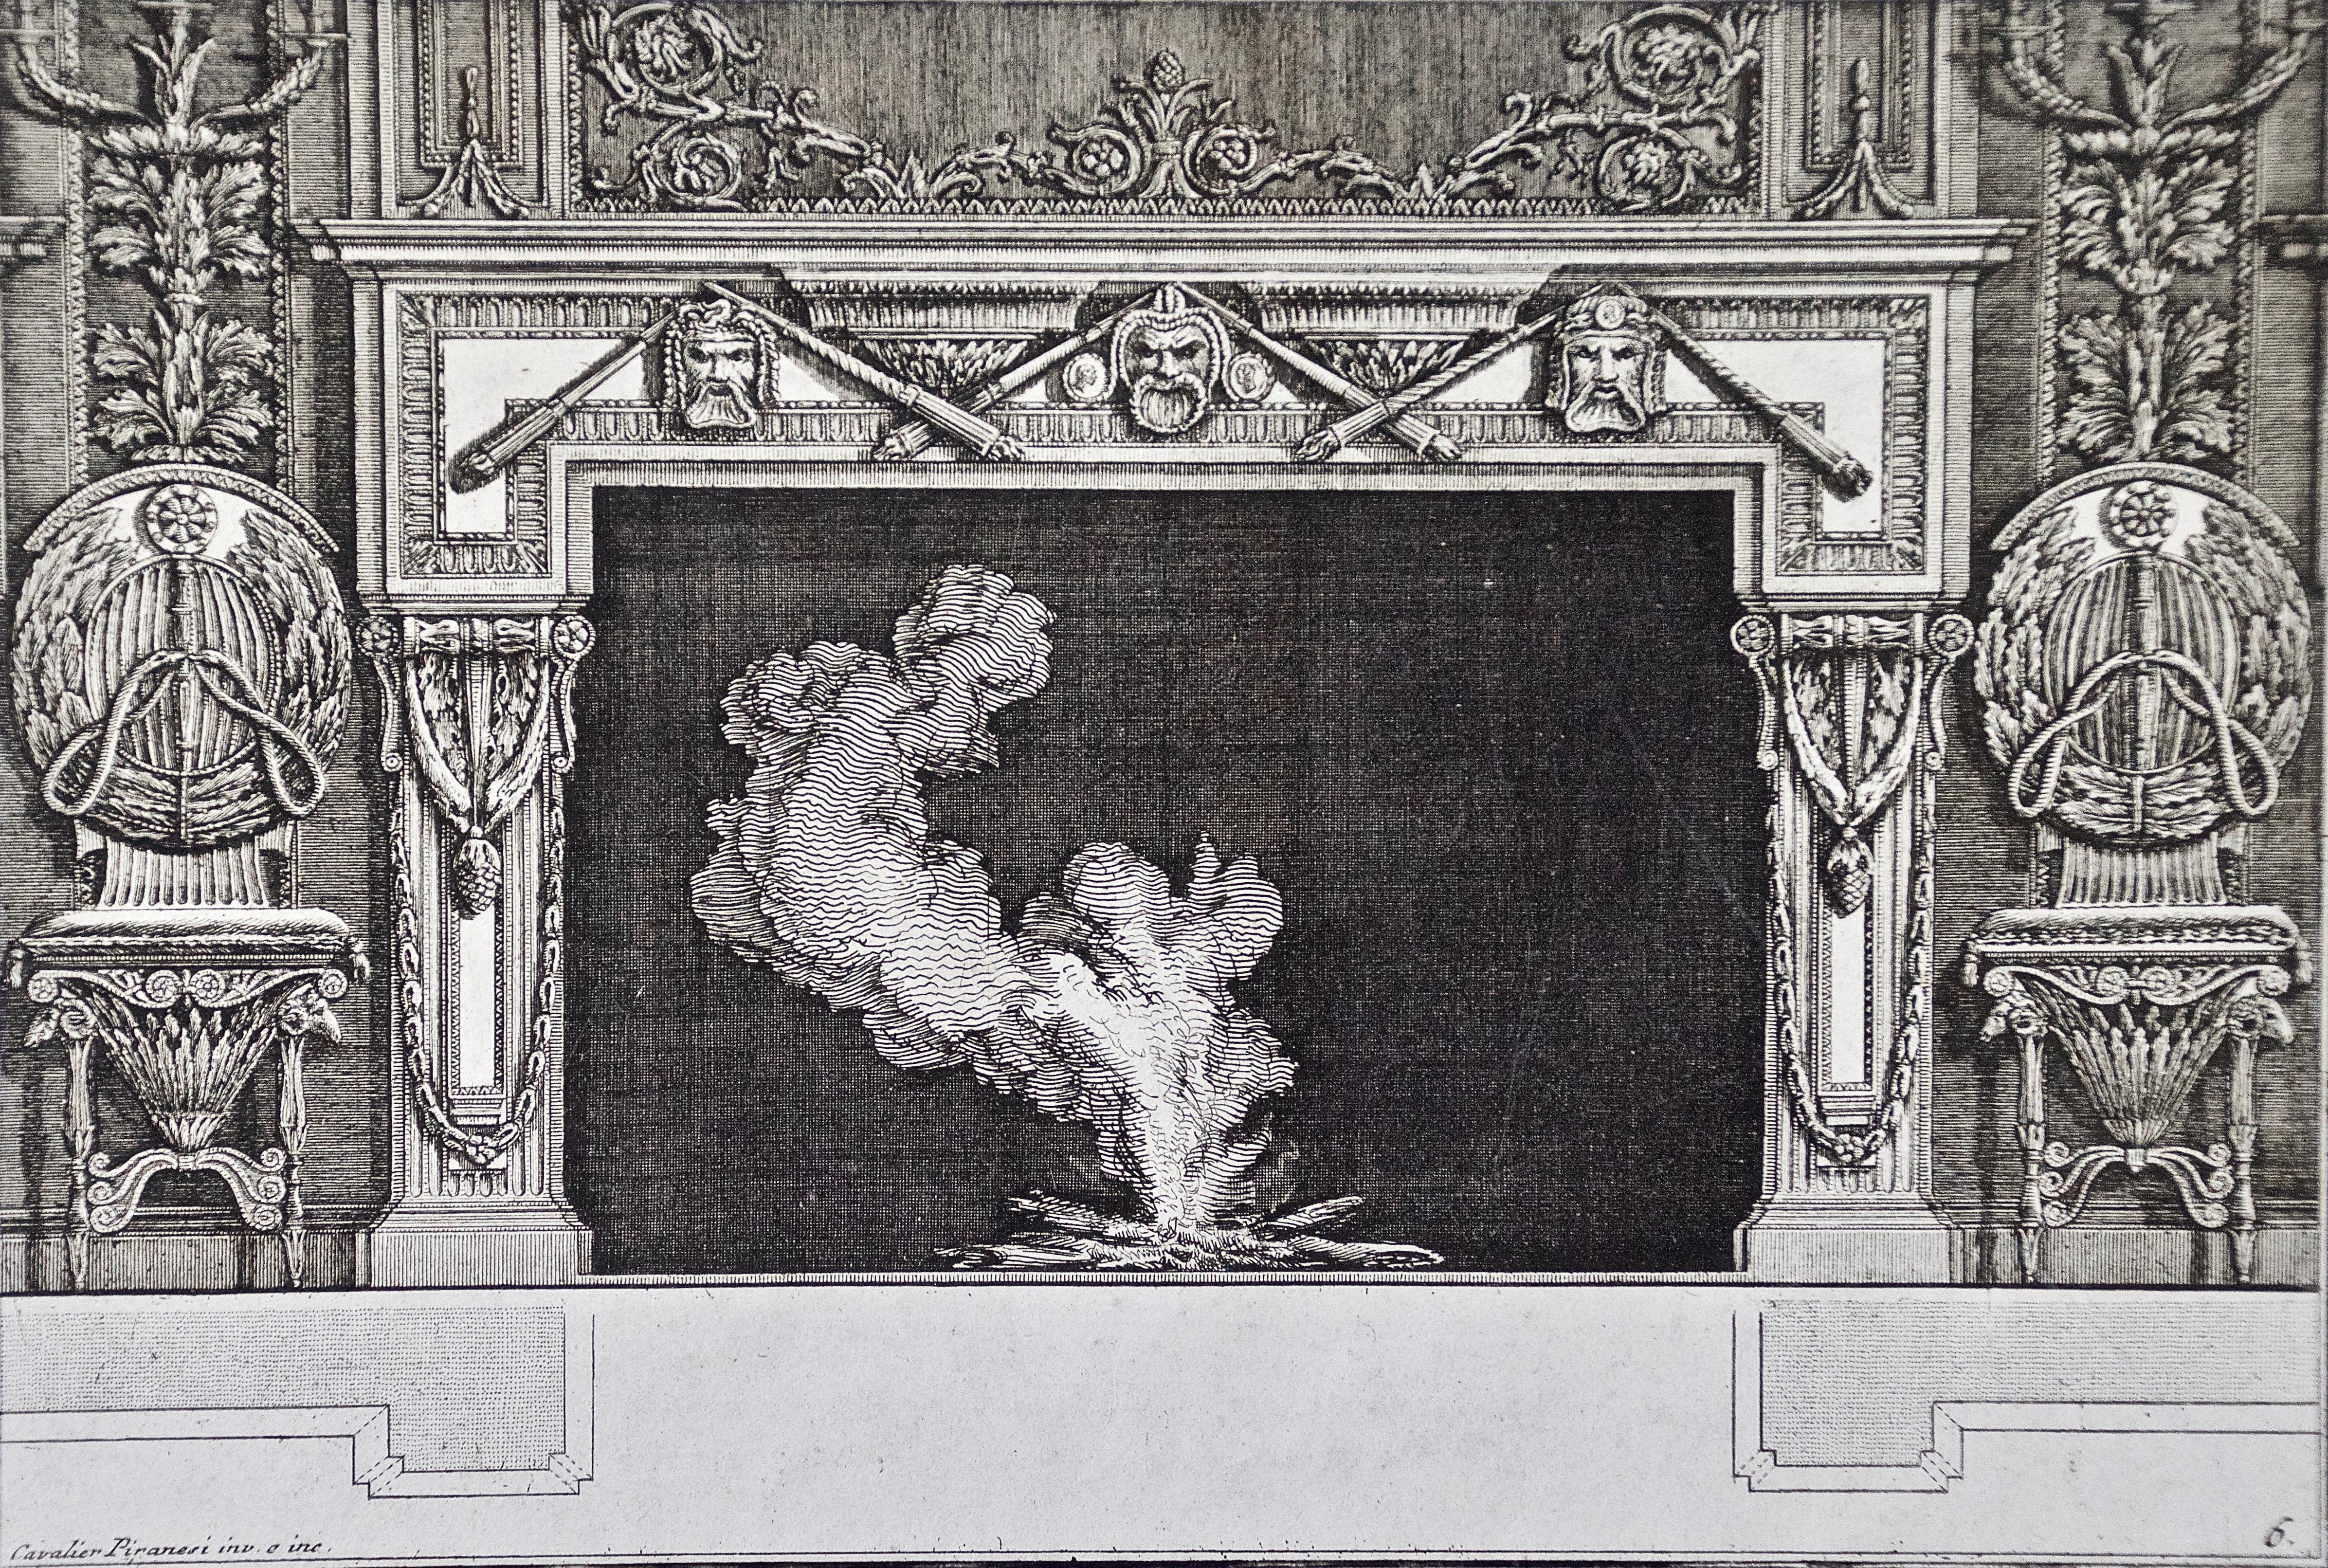 Piranesi-Kamindesigns aus dem 18. Jahrhundert auf der Grundlage antiker architektonischer Stile (Grau), Still-Life Print, von Giovanni Battista Piranesi